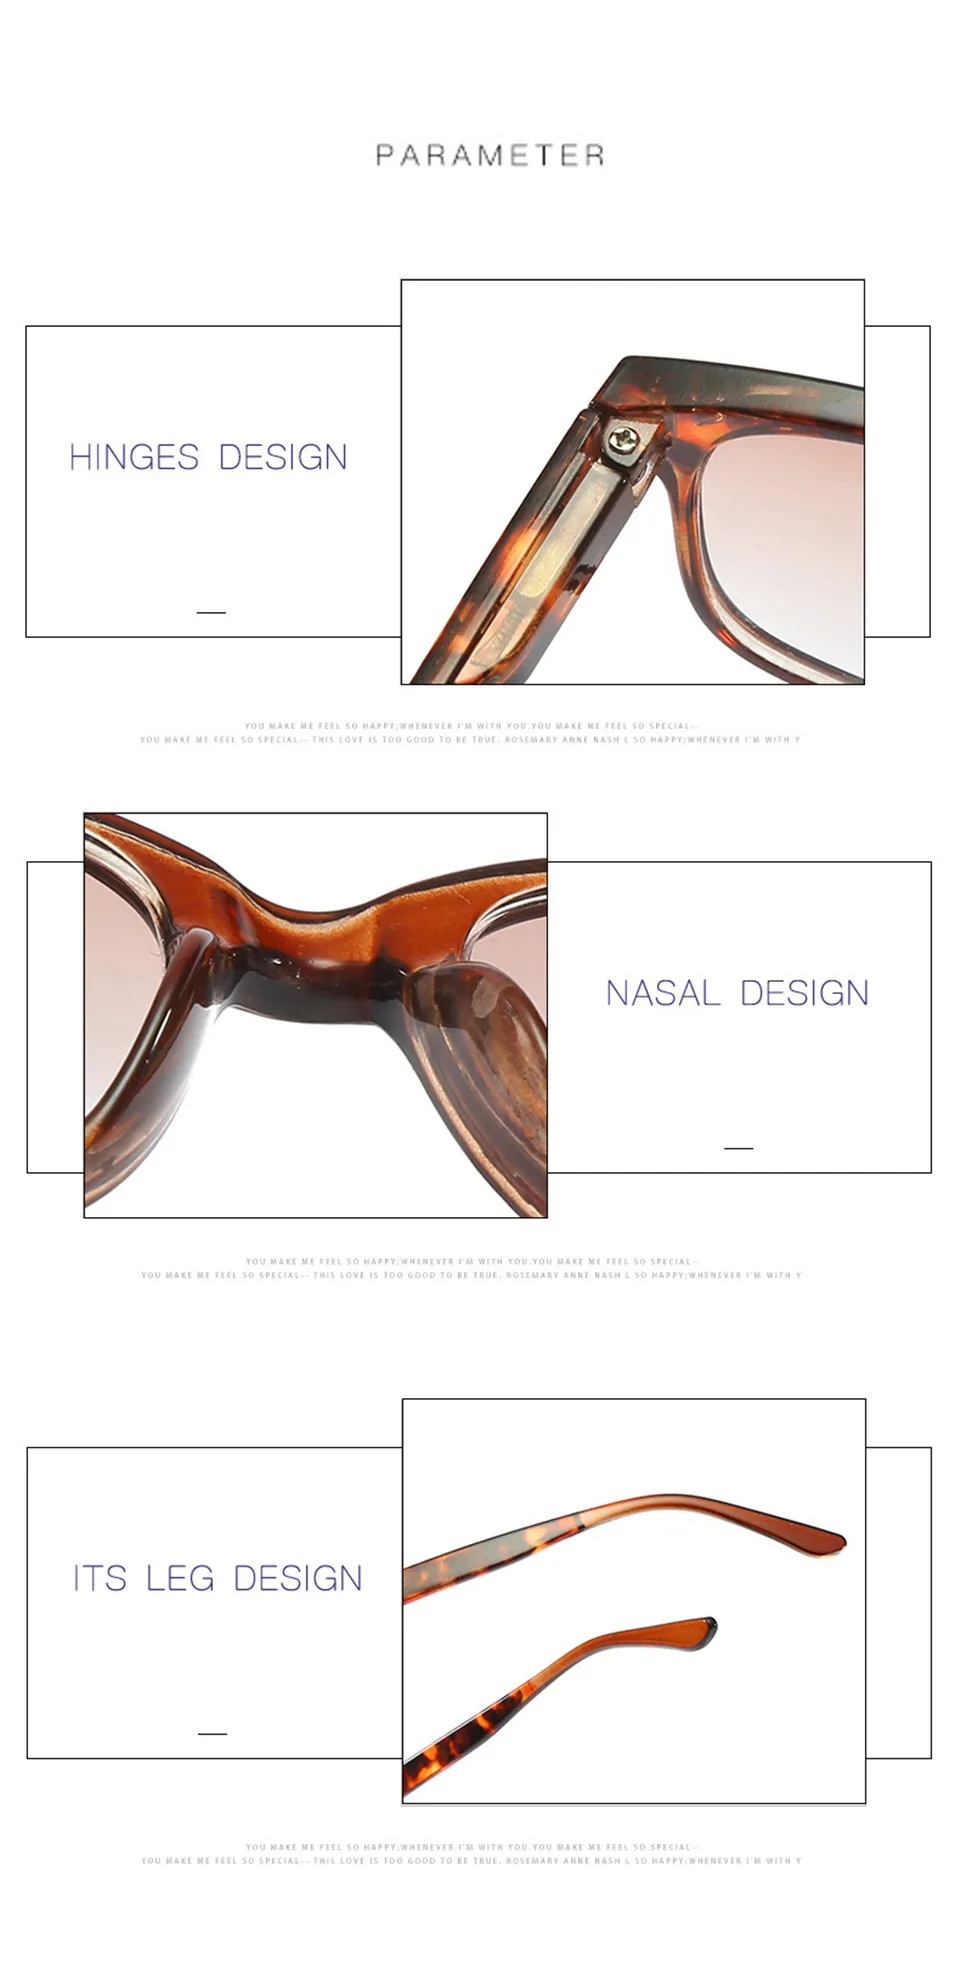 Iboode HD очки для чтения, солнцезащитные очки для женщин и мужчин, градиентные очки для чая/серые линзы, очки для дальнозоркости, унисекс, очки для чтения, диоптрии+ 1,0 1,50 2,5